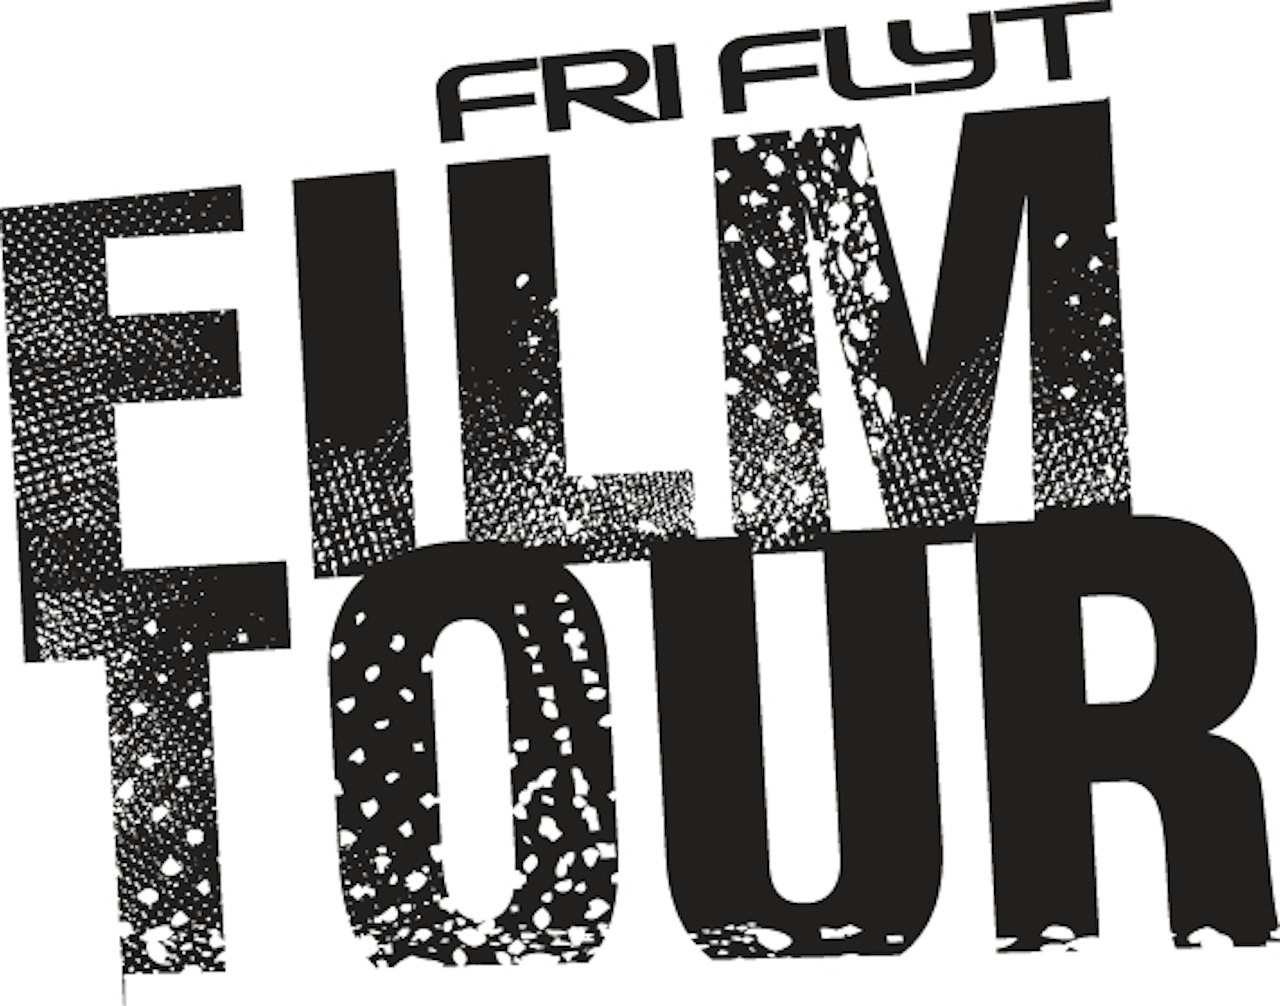 DU BESTEMMER: Hvilke filmer vil DU se på Fri Flyts filmturne til høsten? Stem på din favoritt i boksen til venstre!